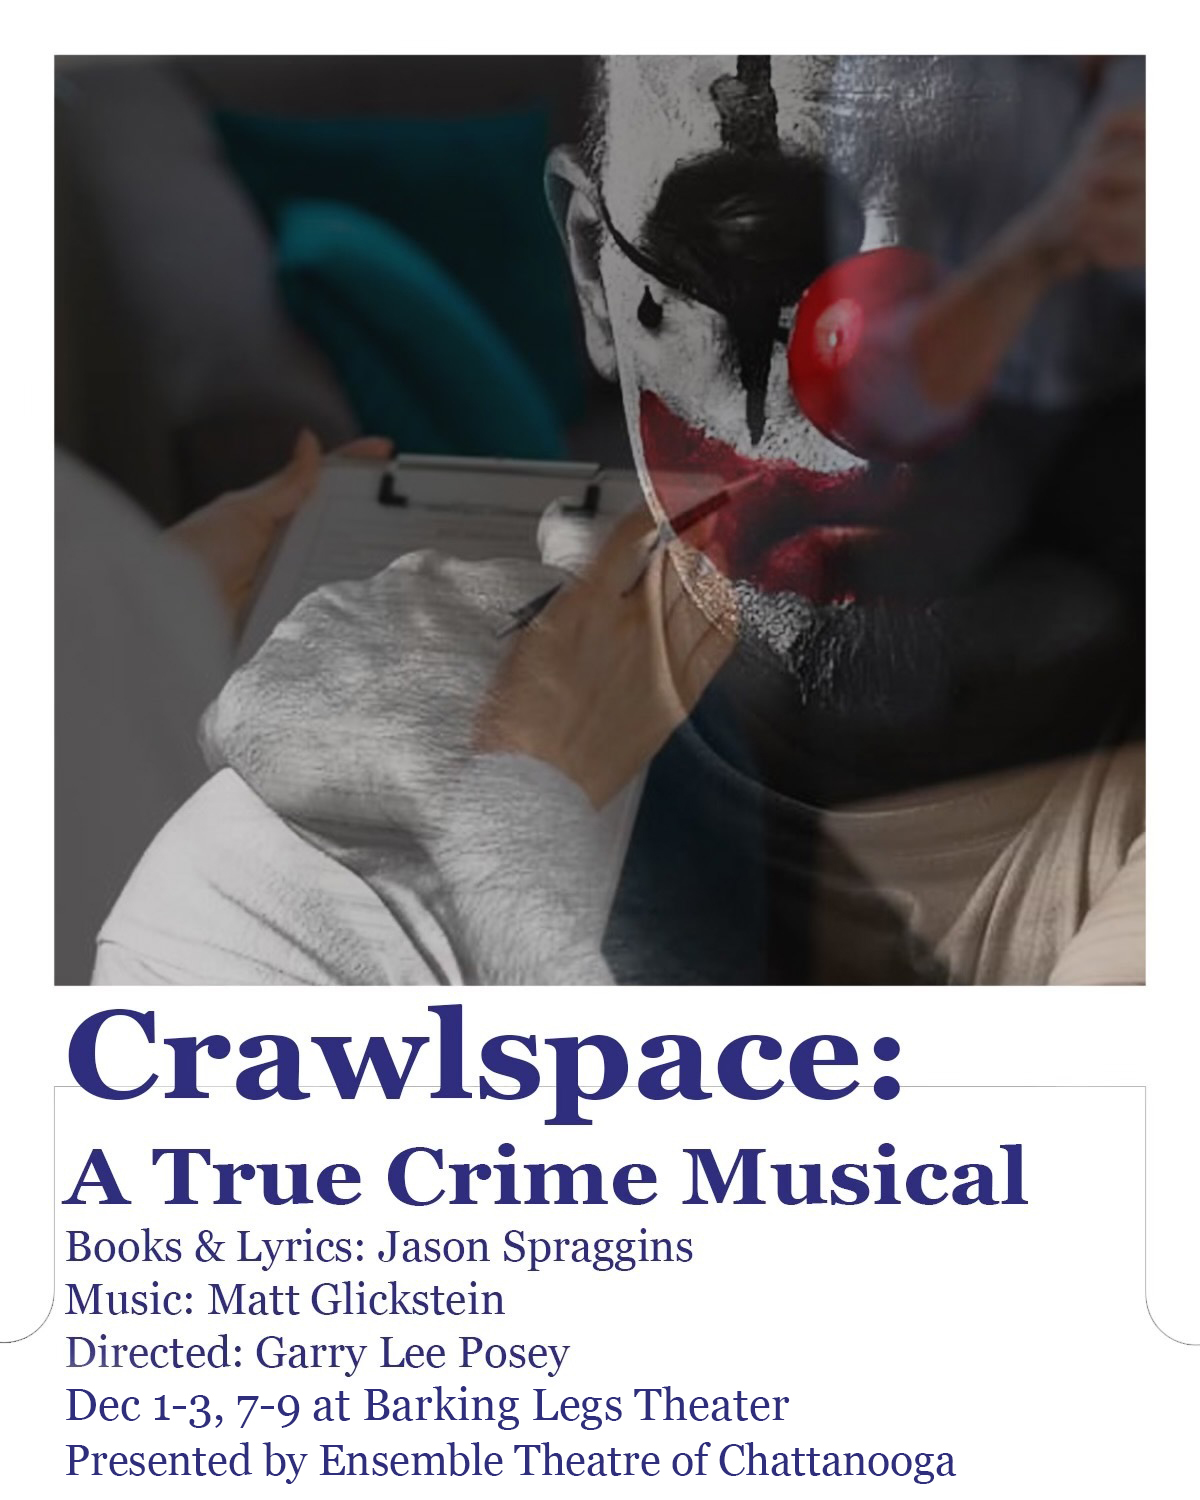 Up Next: Crawlspace: A True Crime Musical